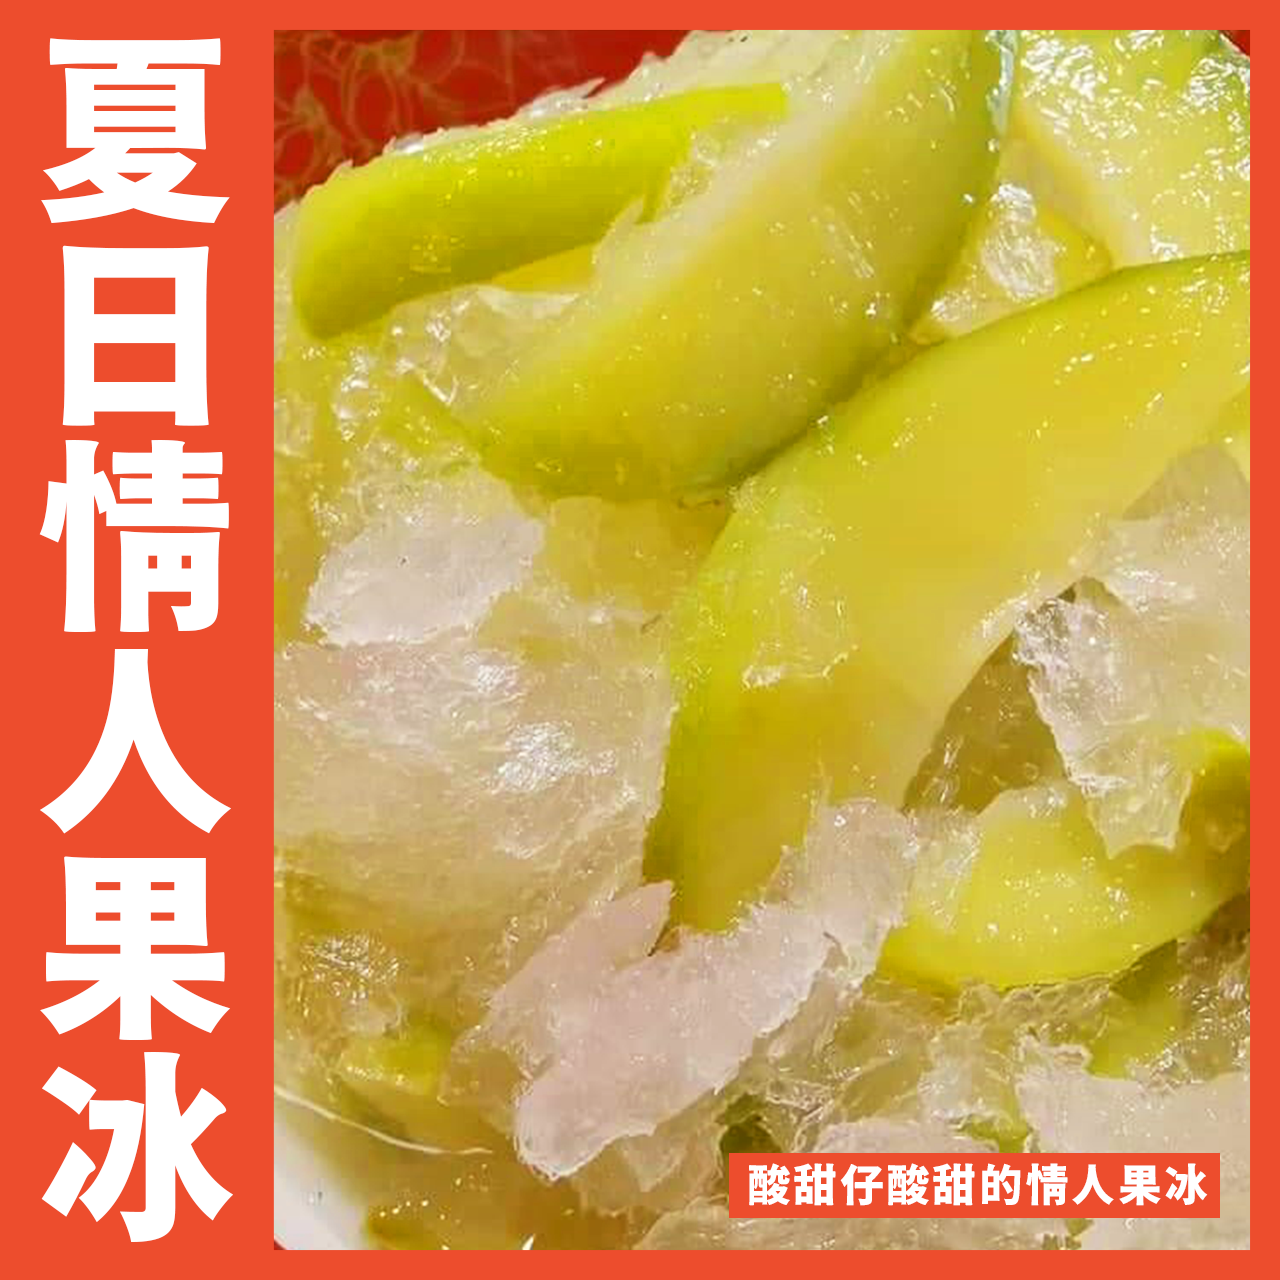 【天天來海鮮】甜蜜蜜情人果冰/600克/包